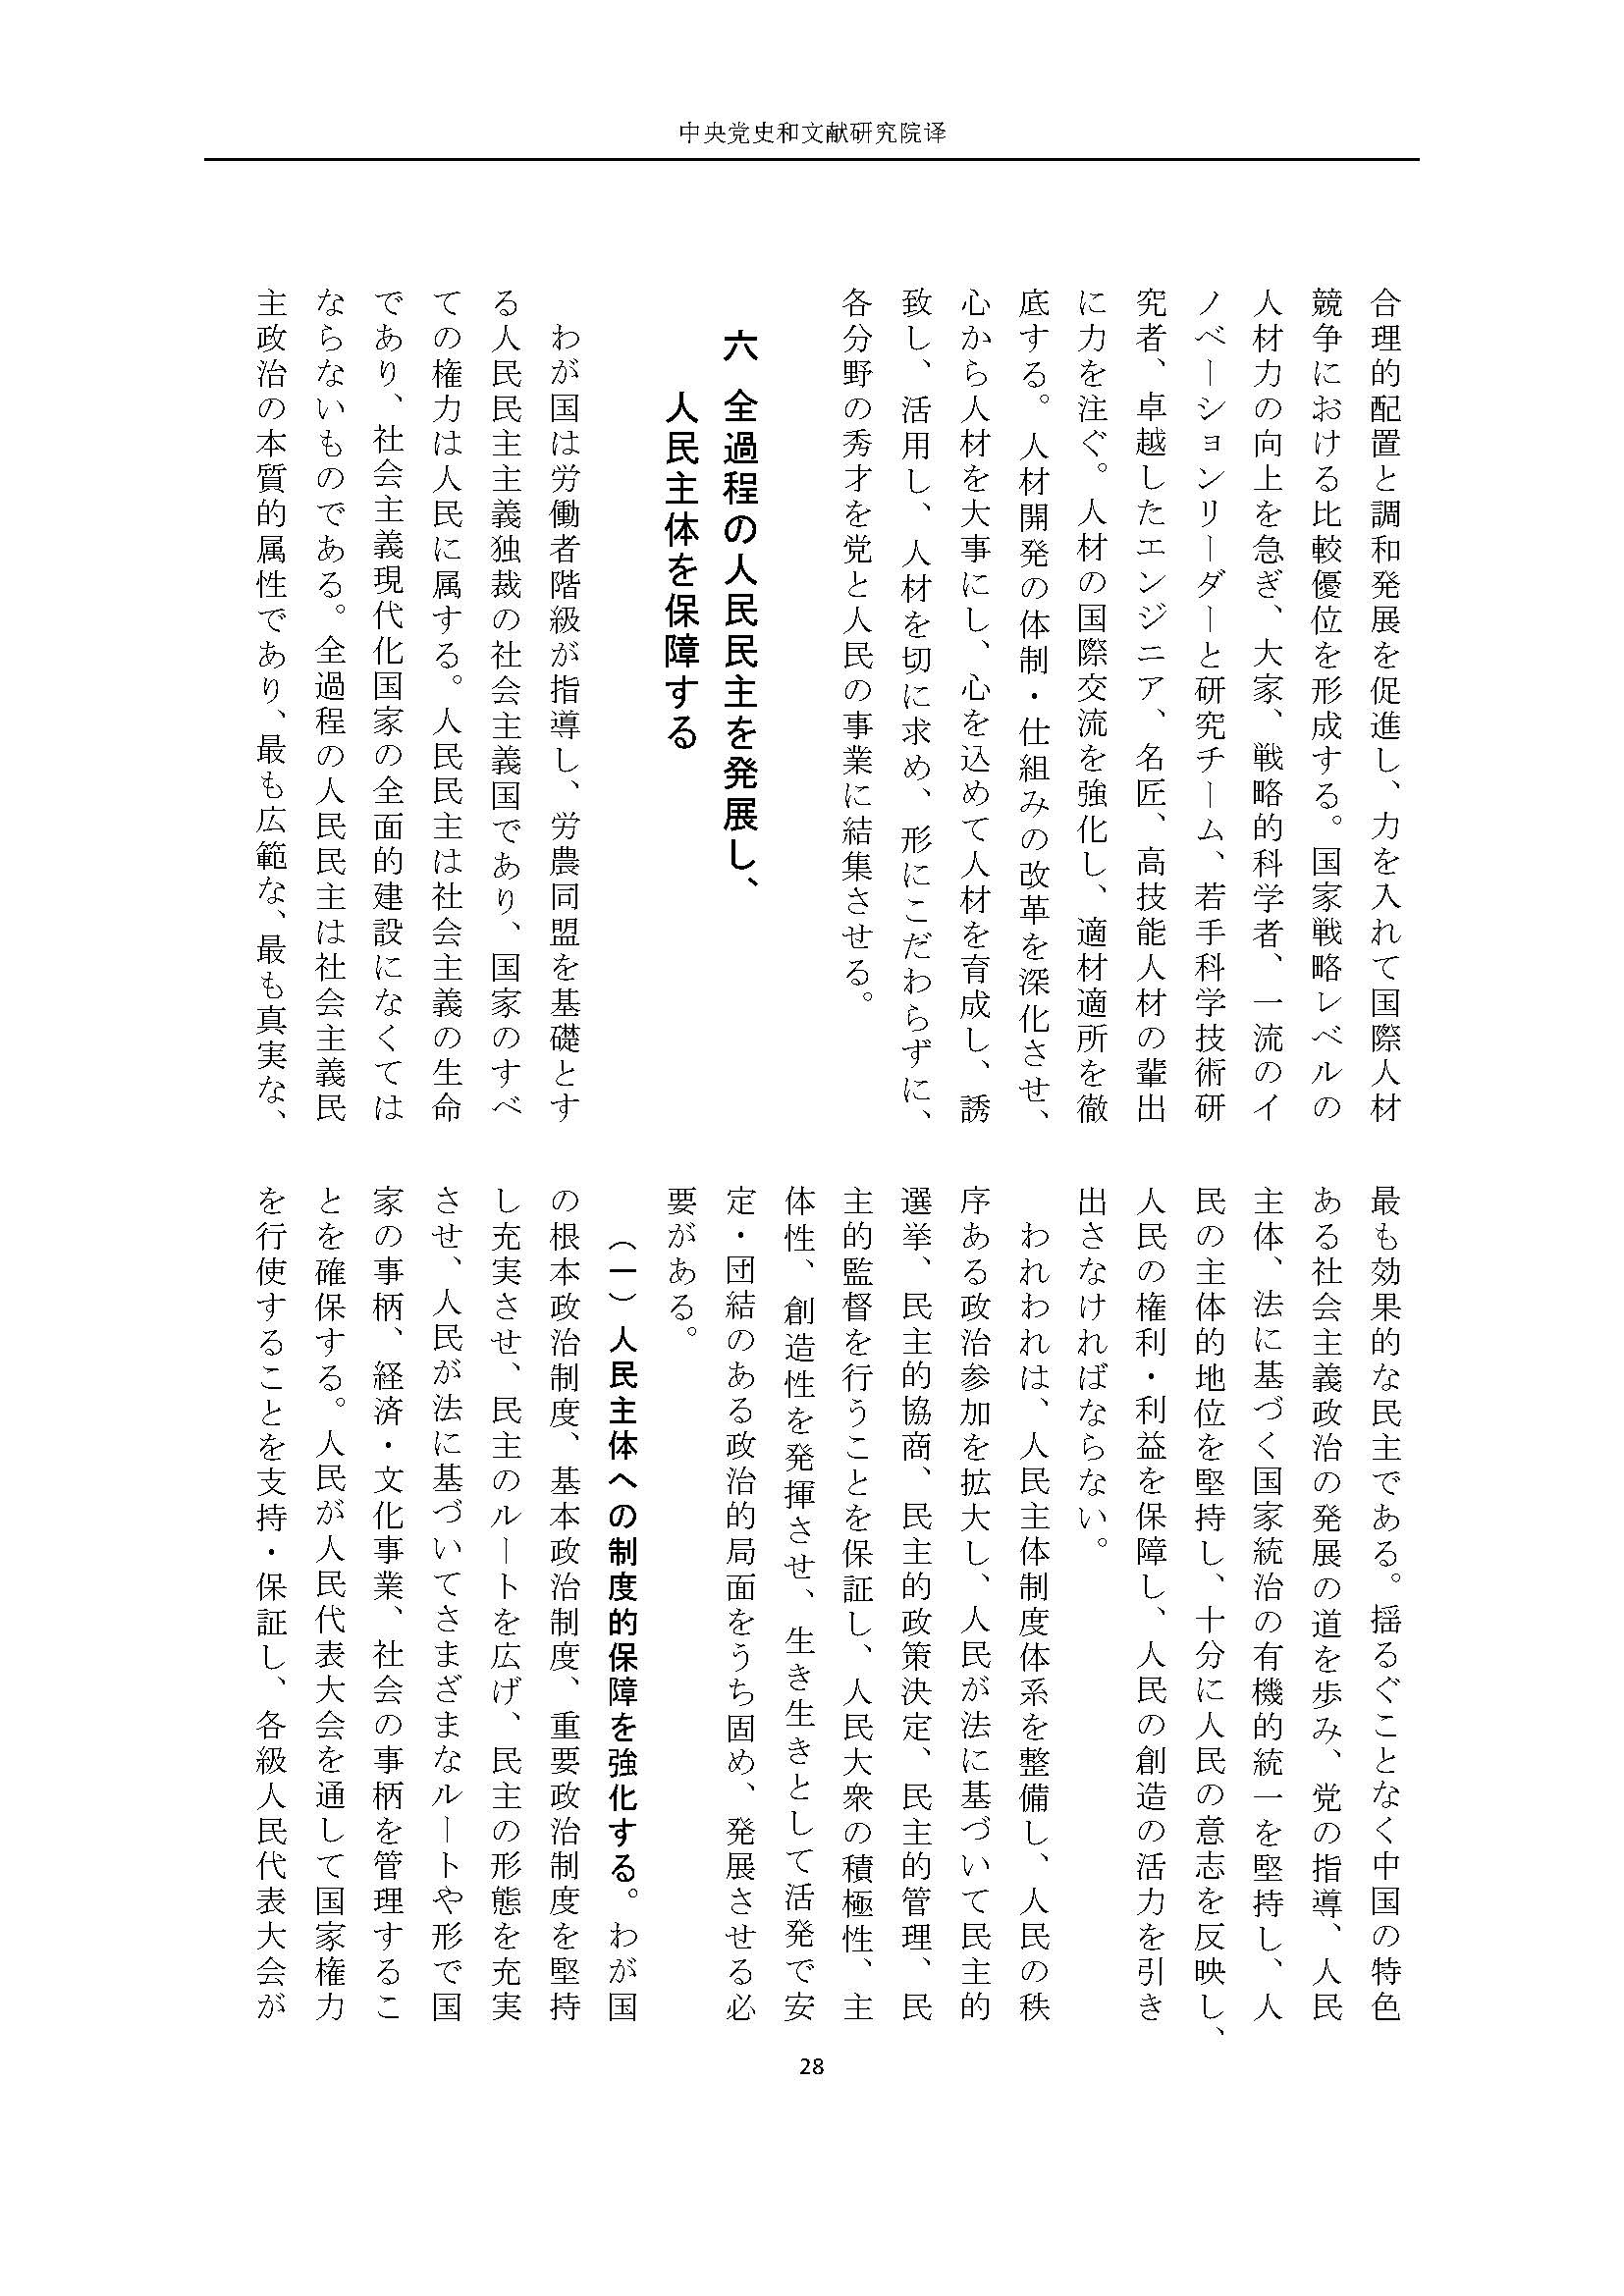 二十大报告（日文全文）_页面_29